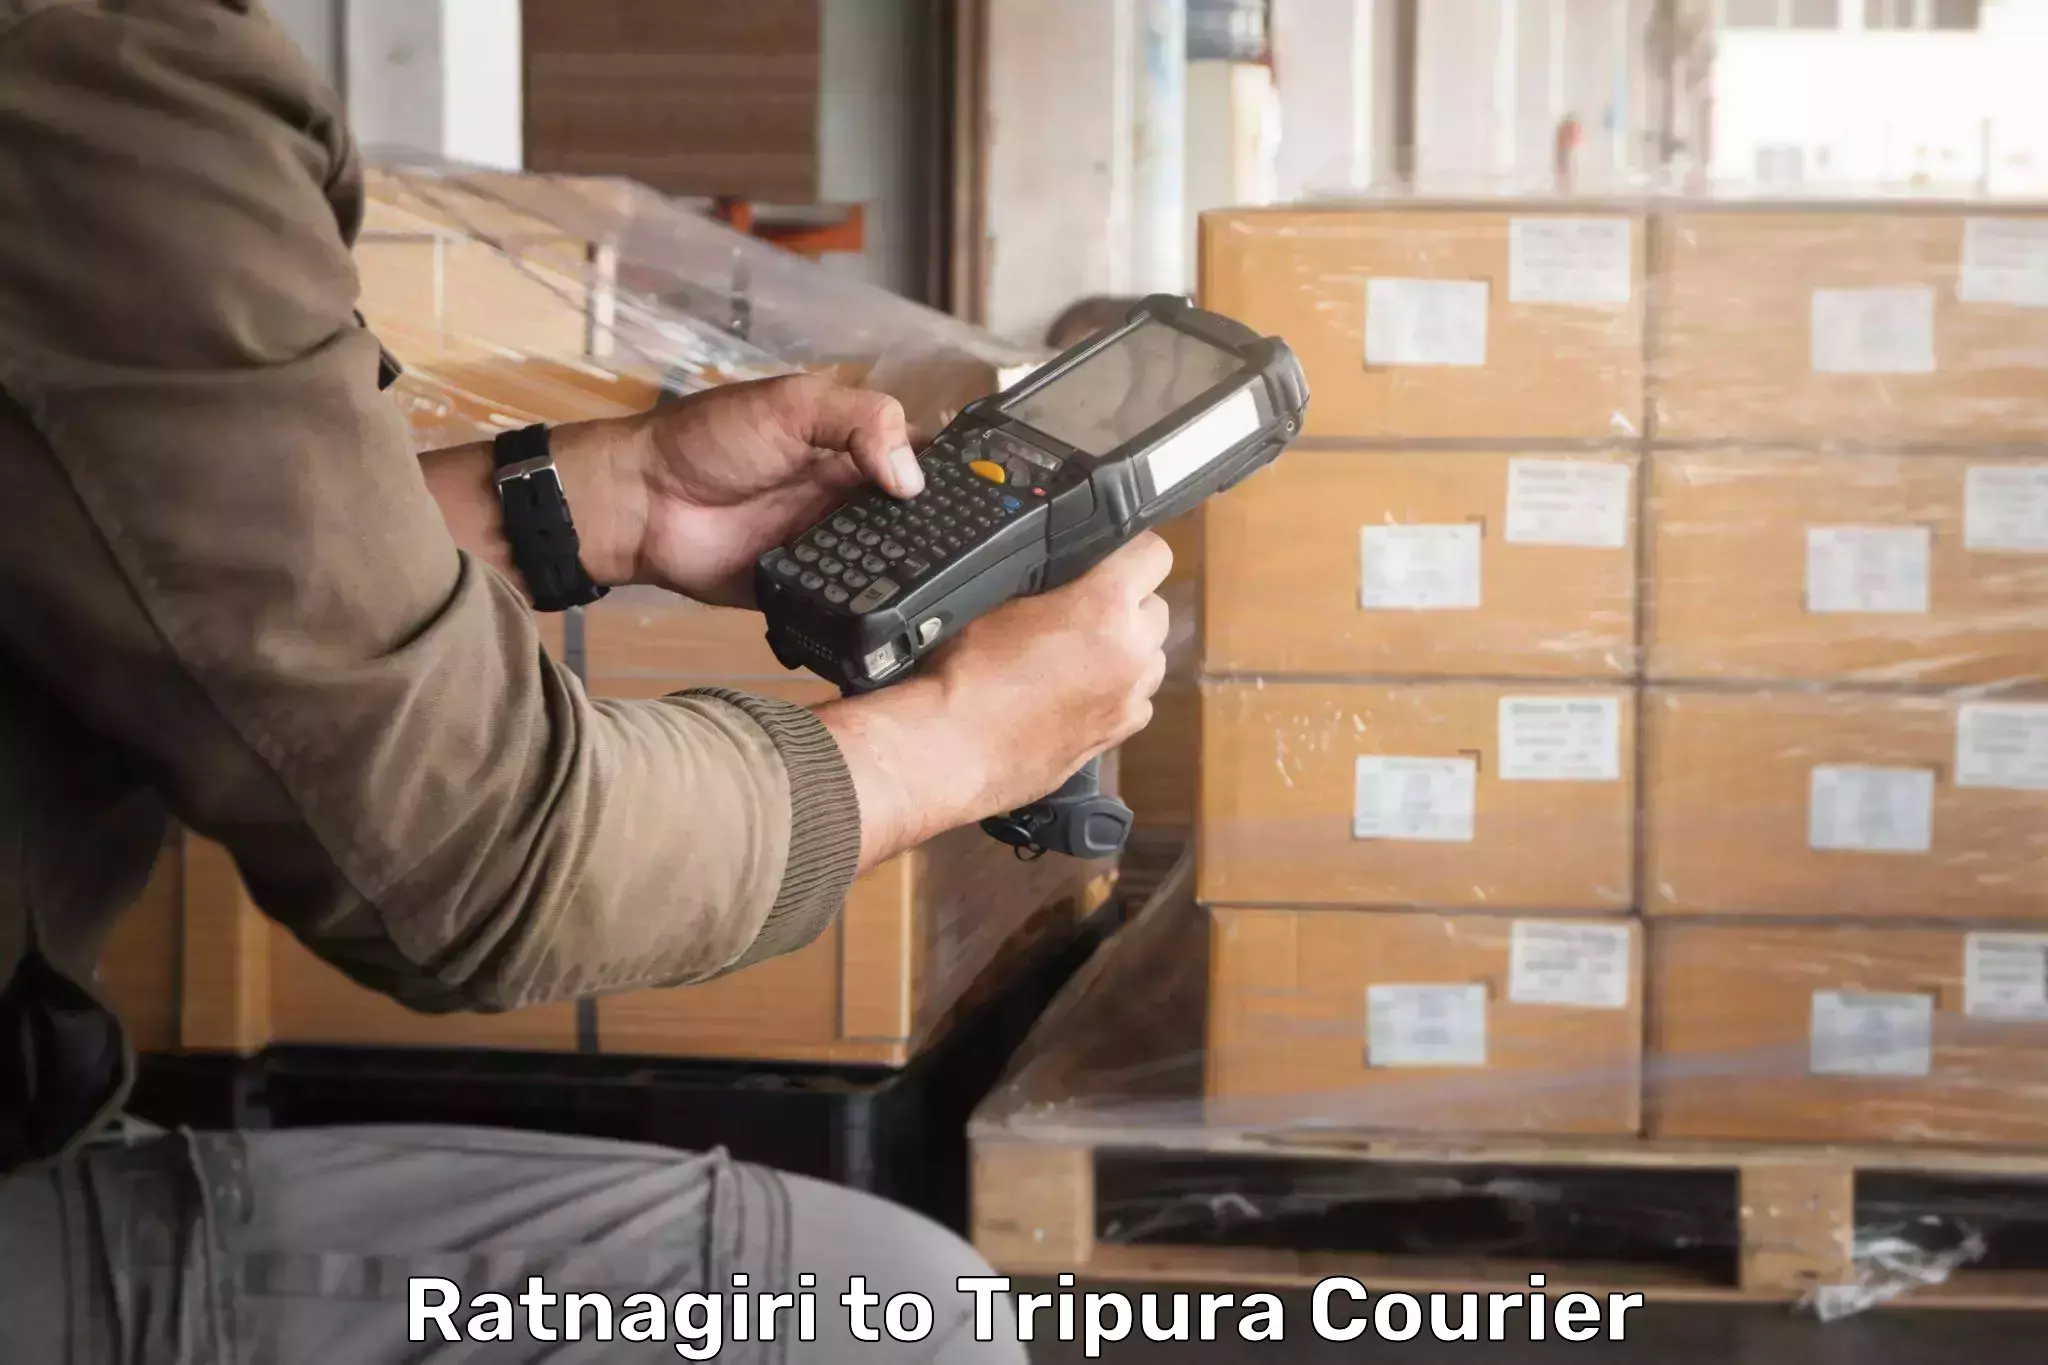 Bulk courier orders Ratnagiri to Agartala